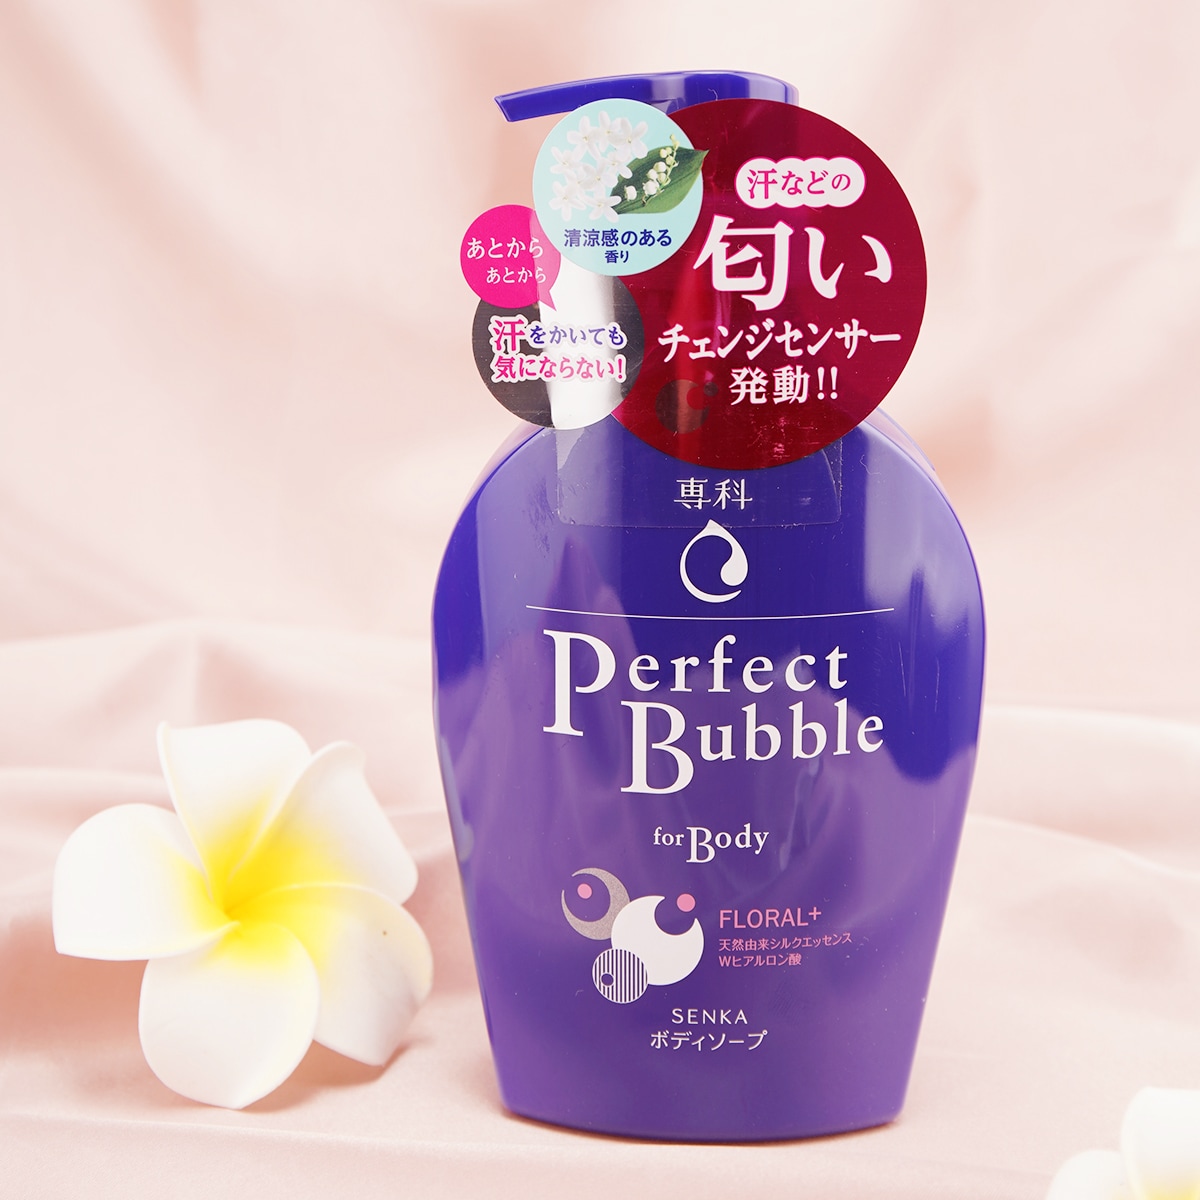 Shiseido Perfect Bubble mydło w płynie do ciała 500ml